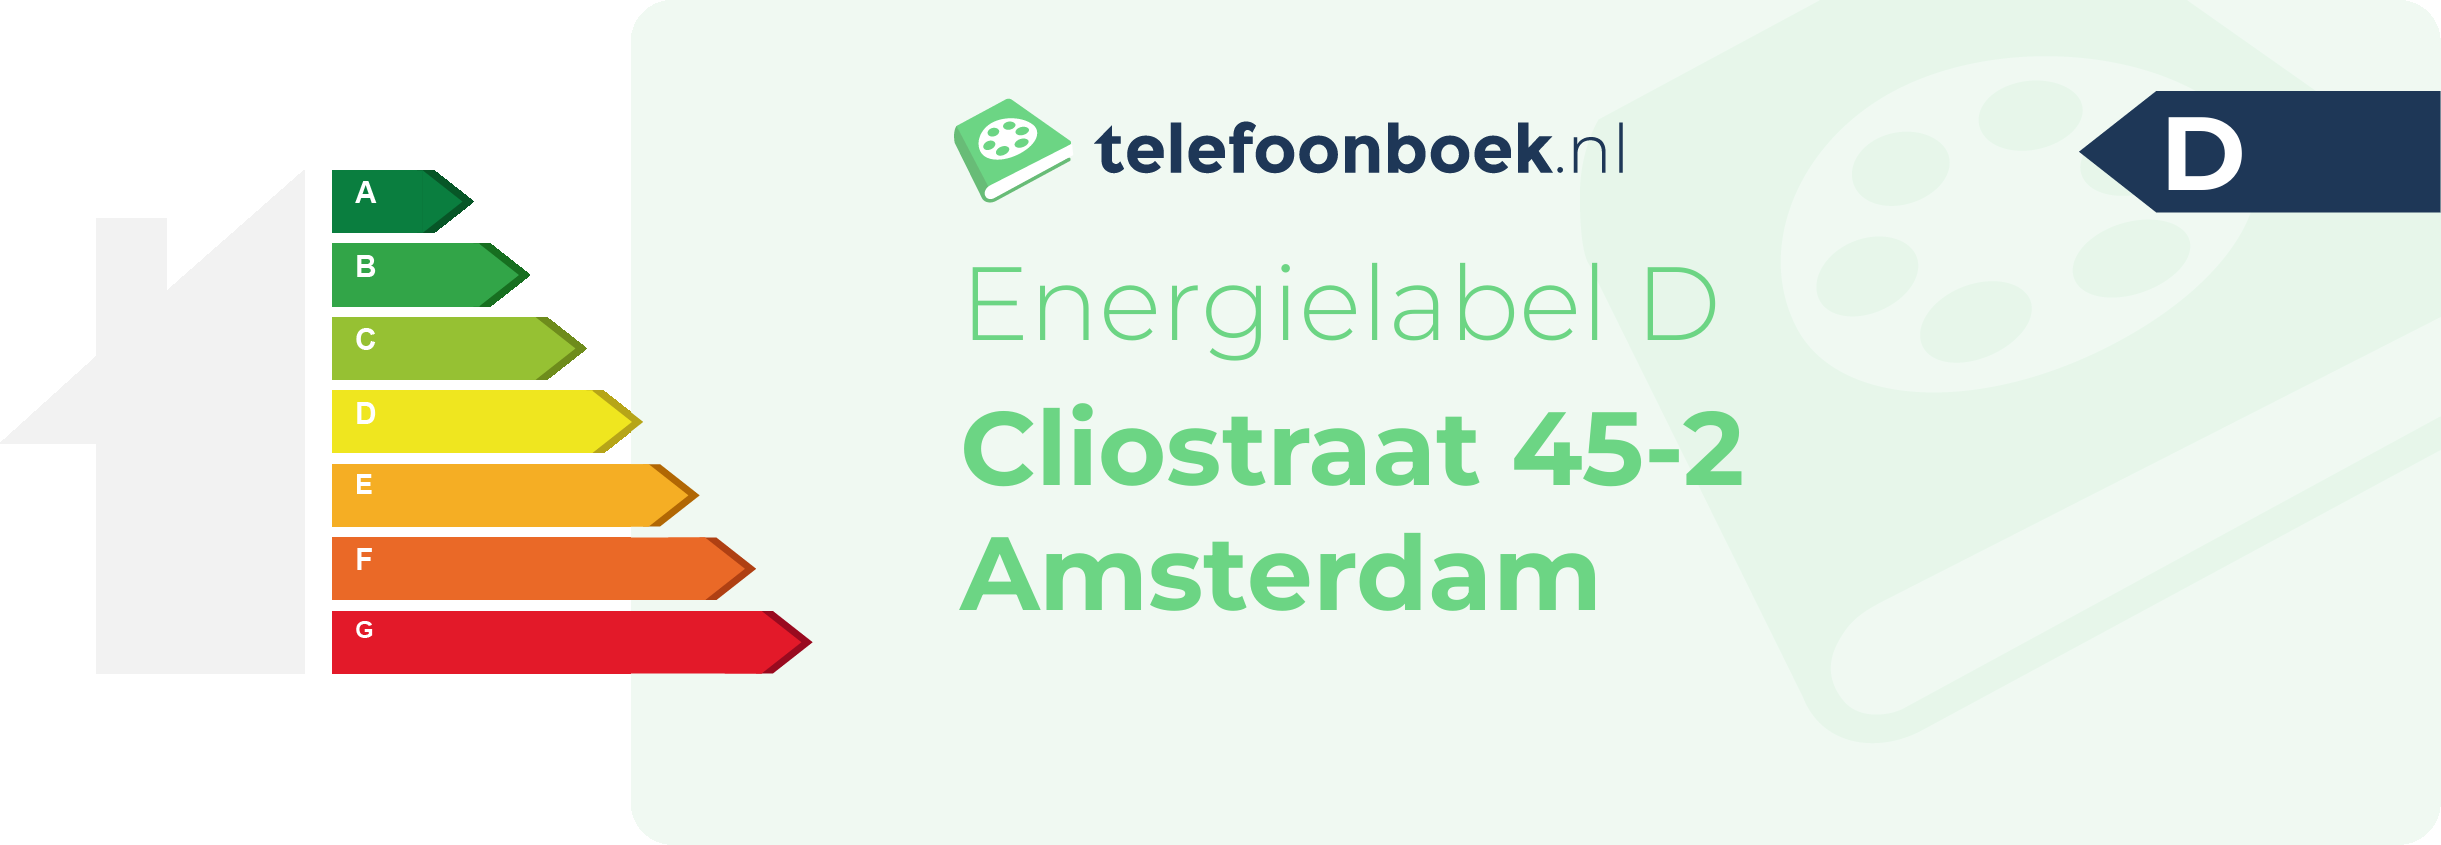 Energielabel Cliostraat 45-2 Amsterdam